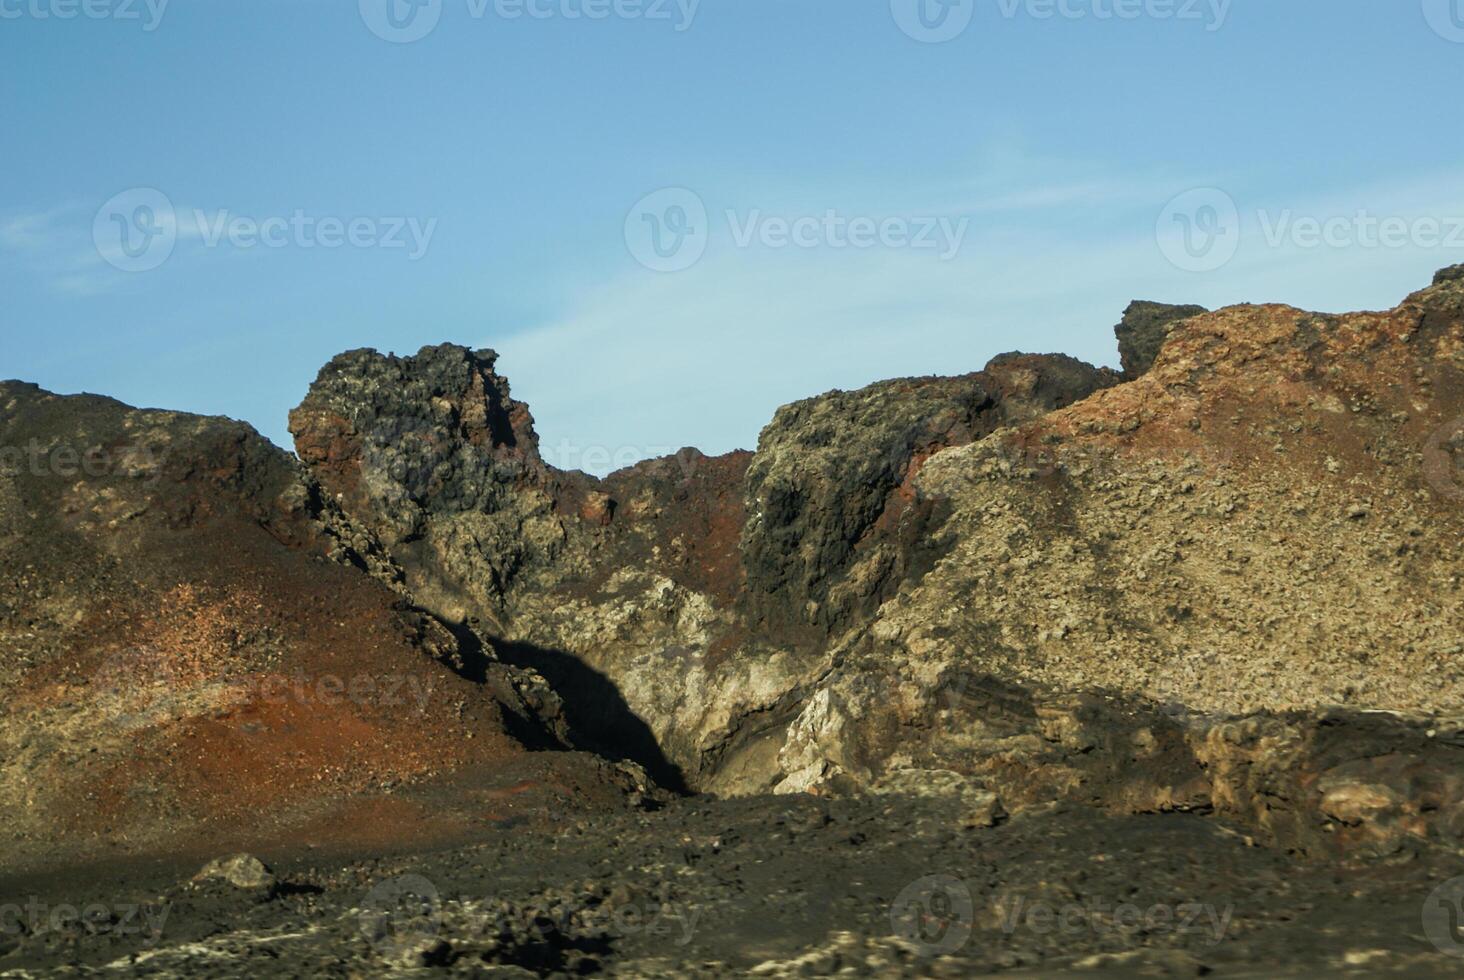 Montañas de fuego, montañas del fuego, parque nacional de timanfaya en la isla de lanzarote, españa foto